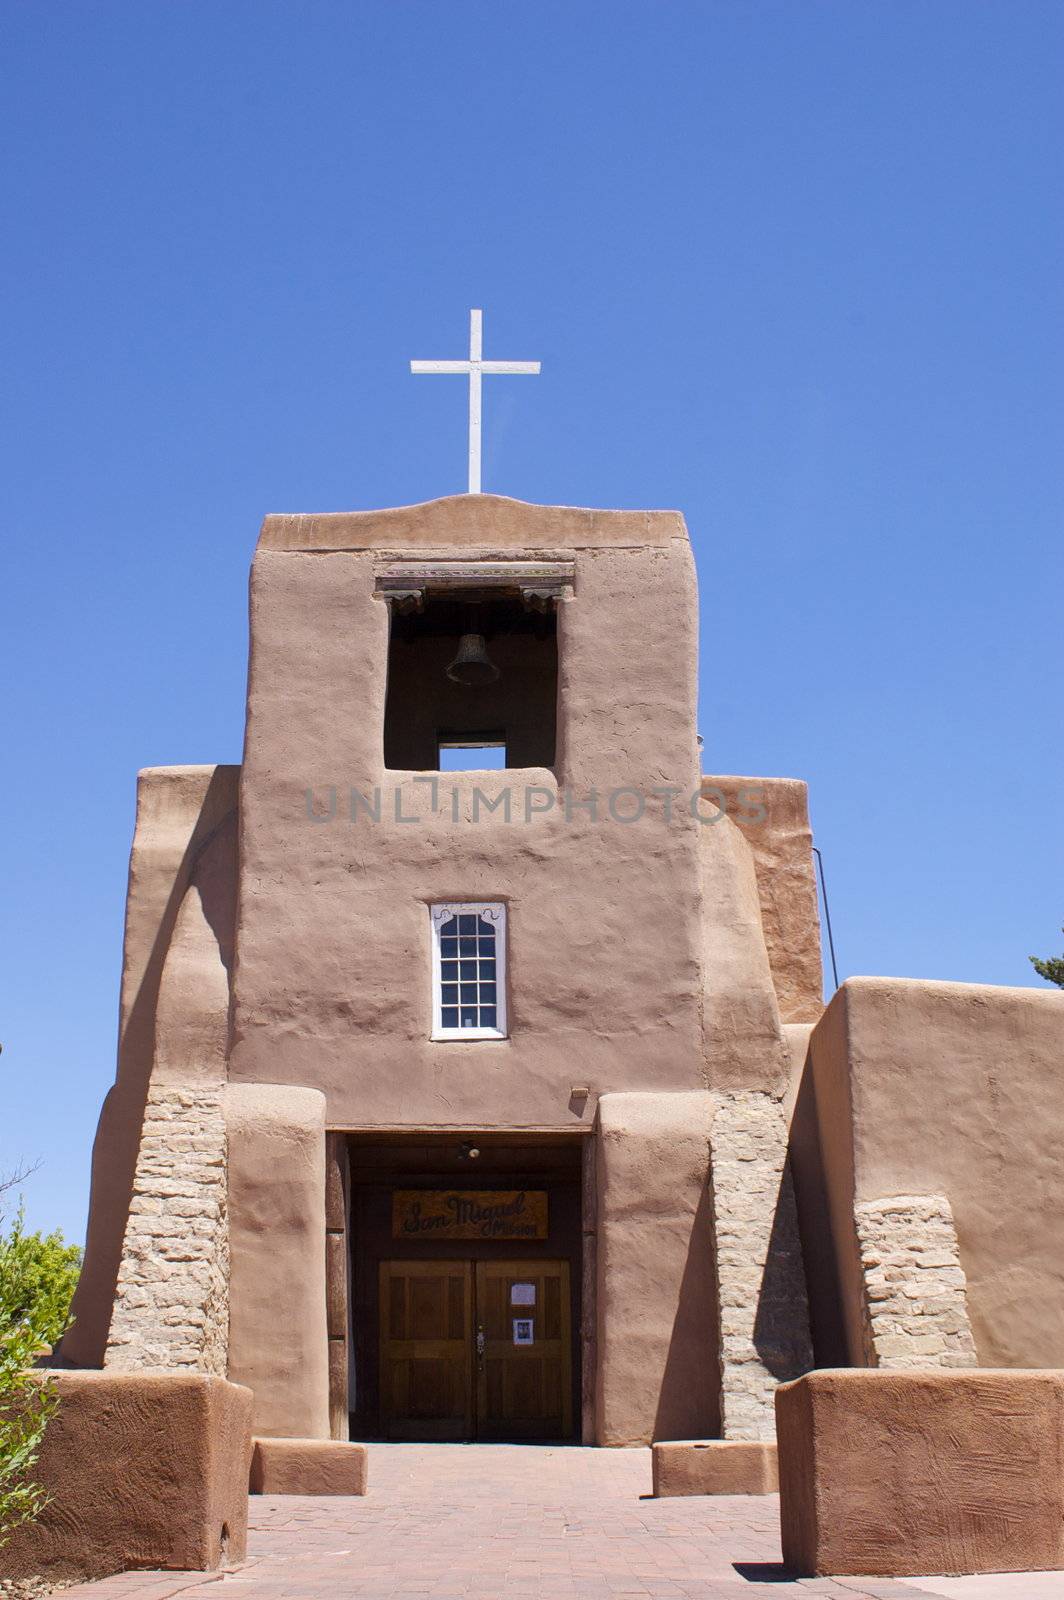 New Mexico Adobe Church by PrincessToula